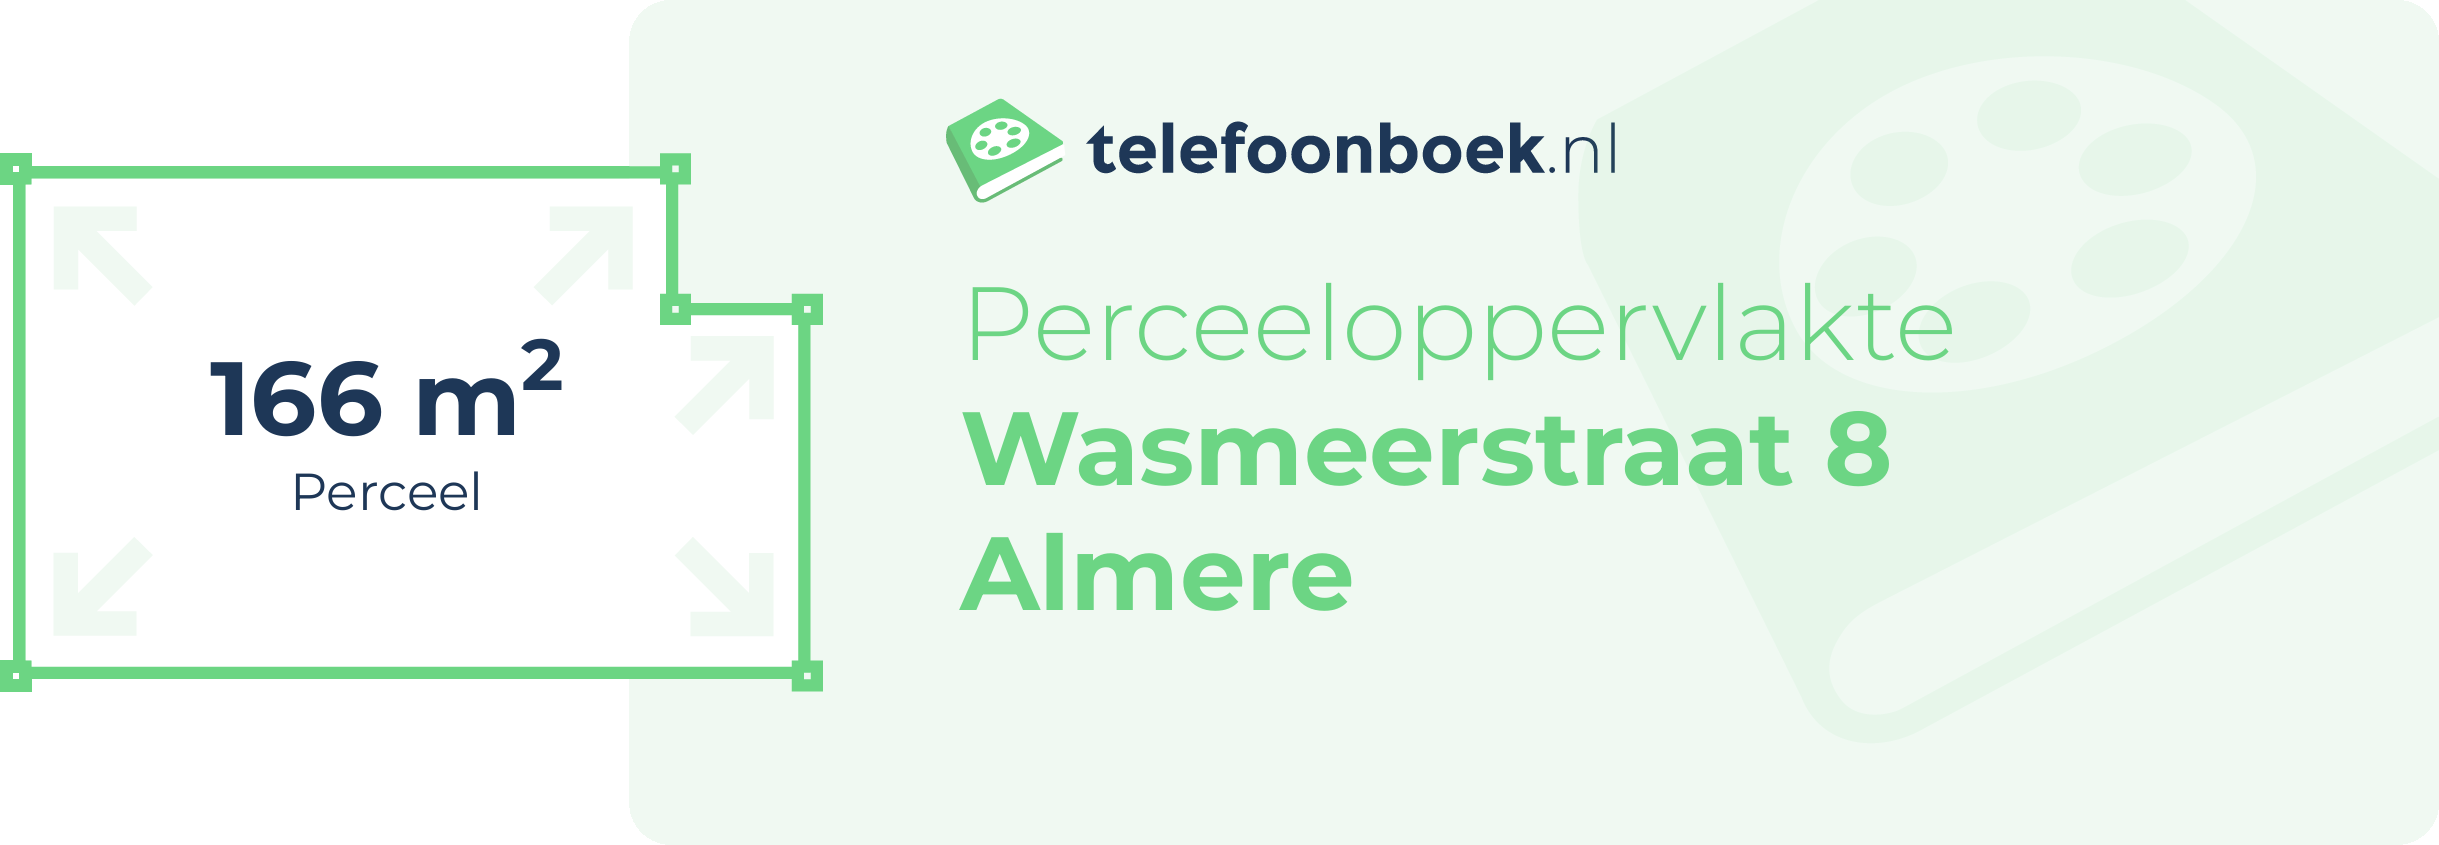 Perceeloppervlakte Wasmeerstraat 8 Almere